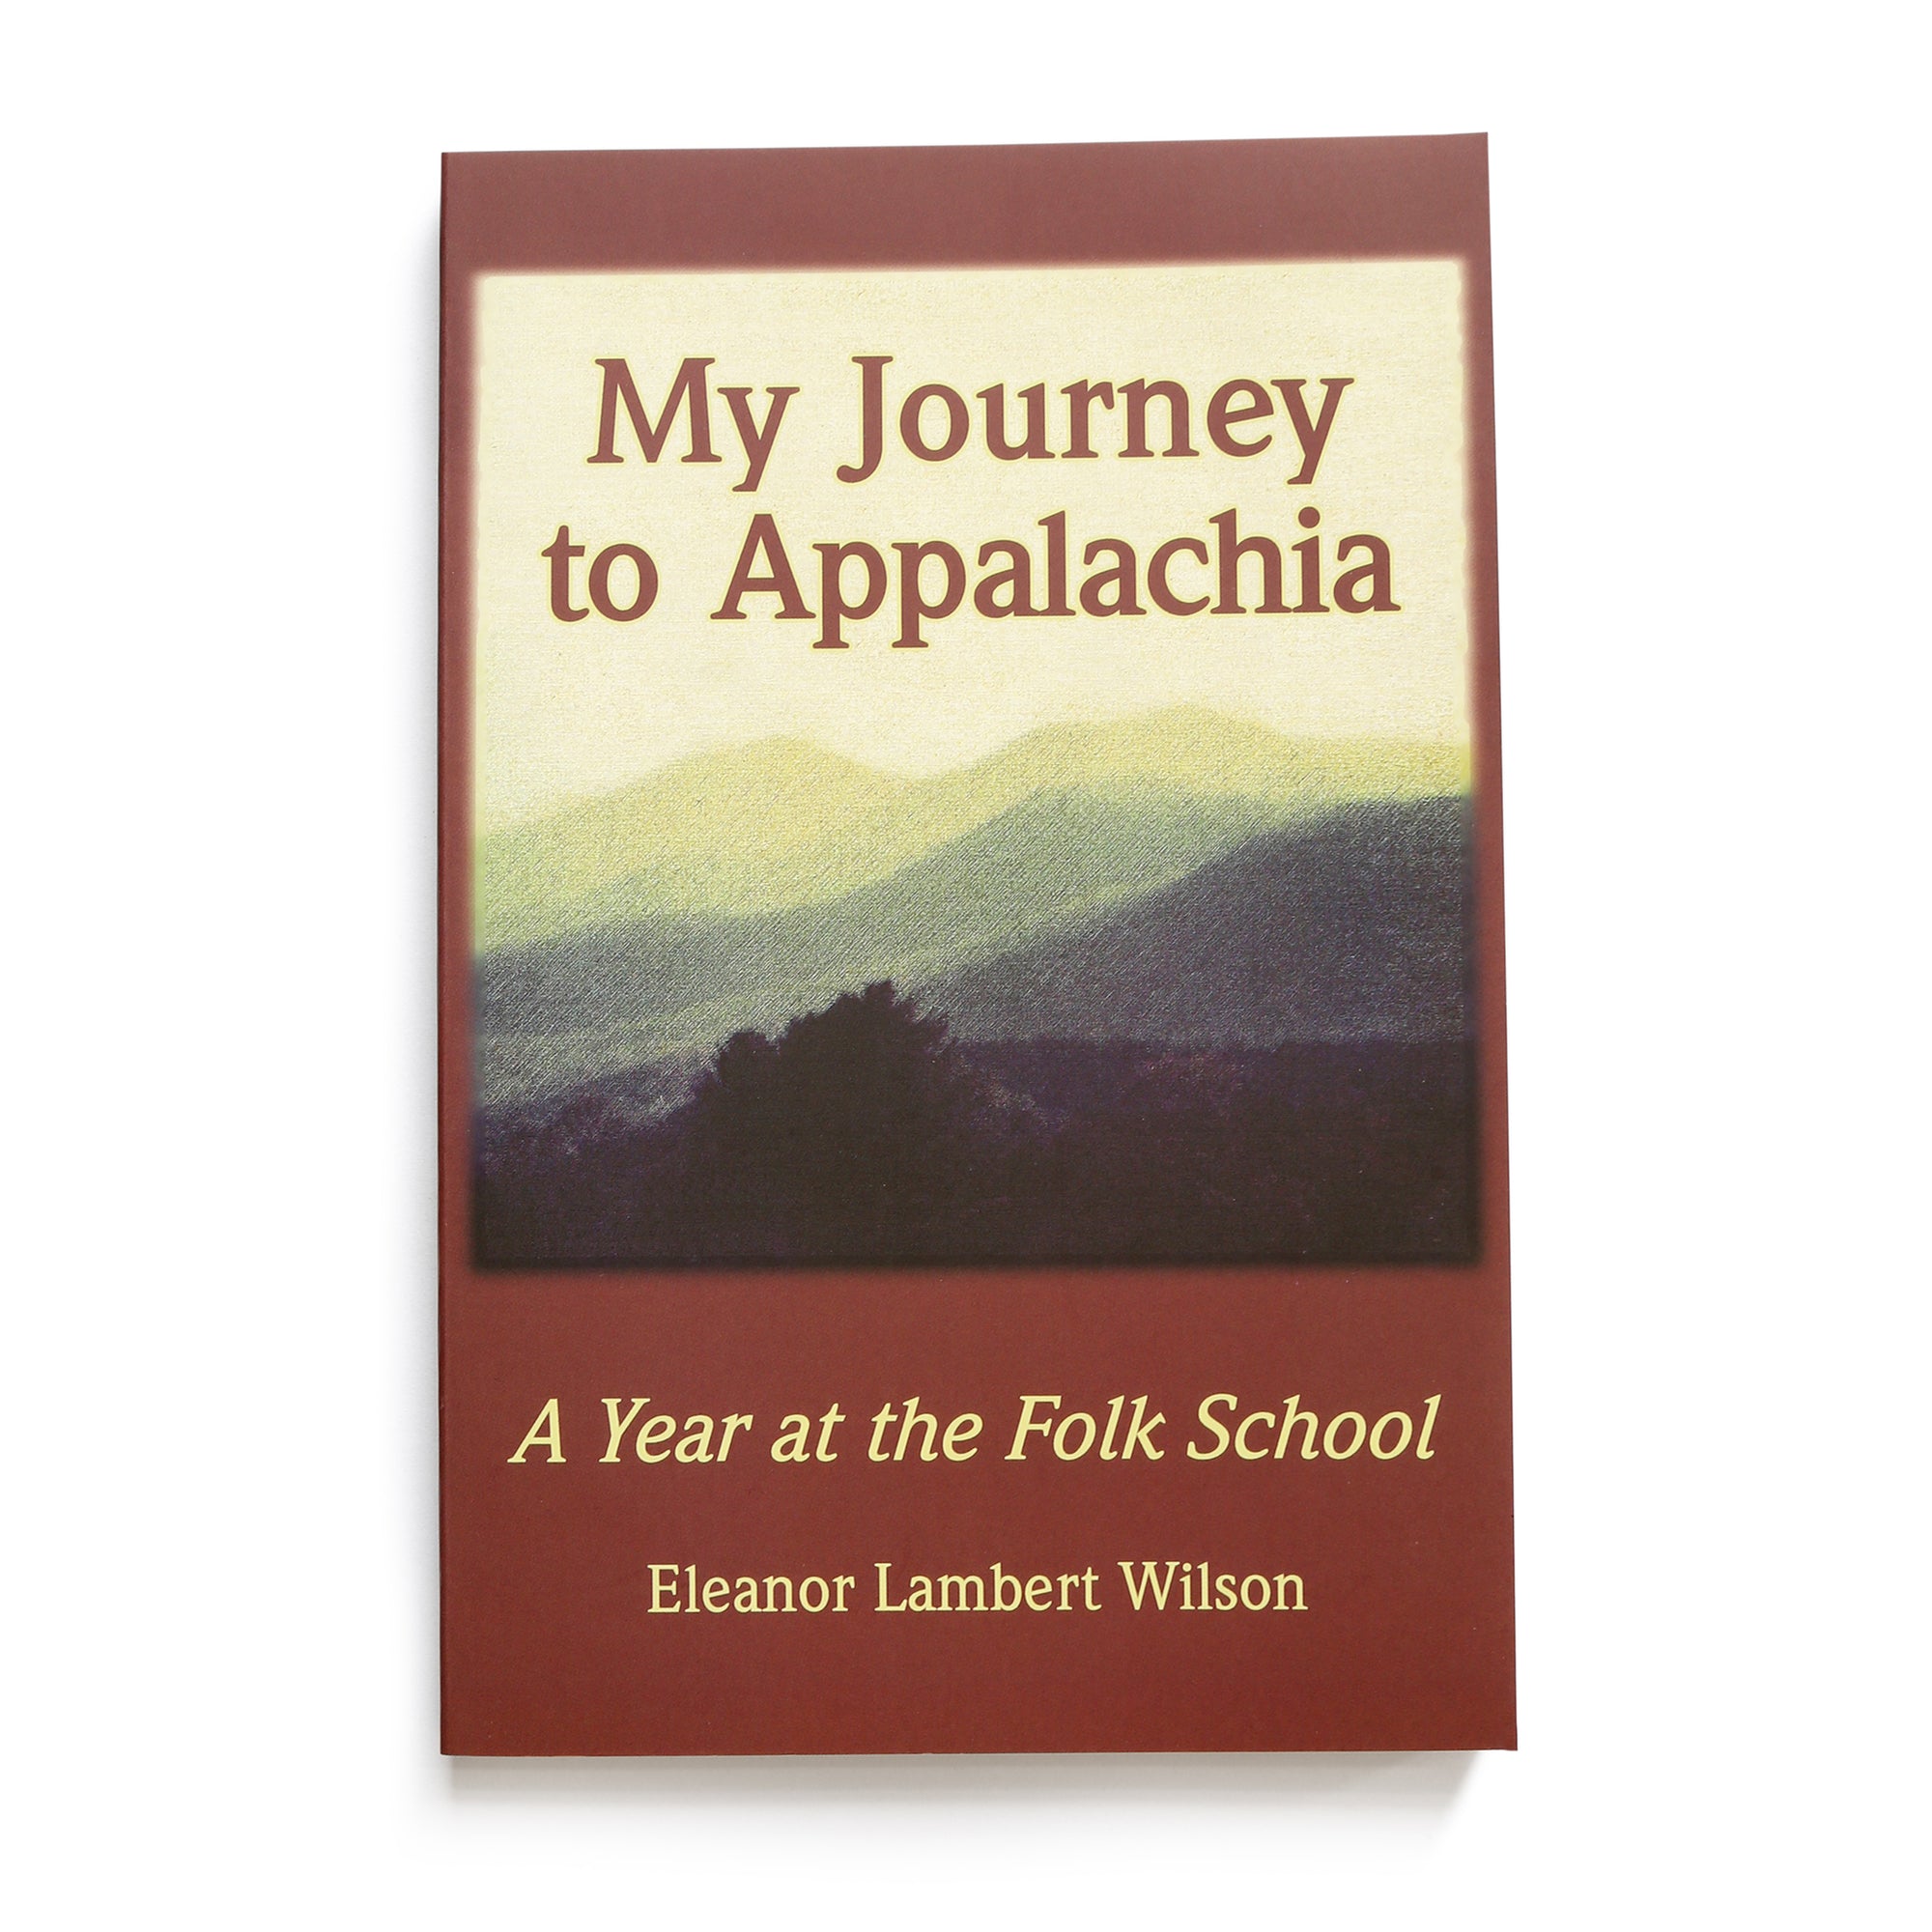 My Journey to Appalachia